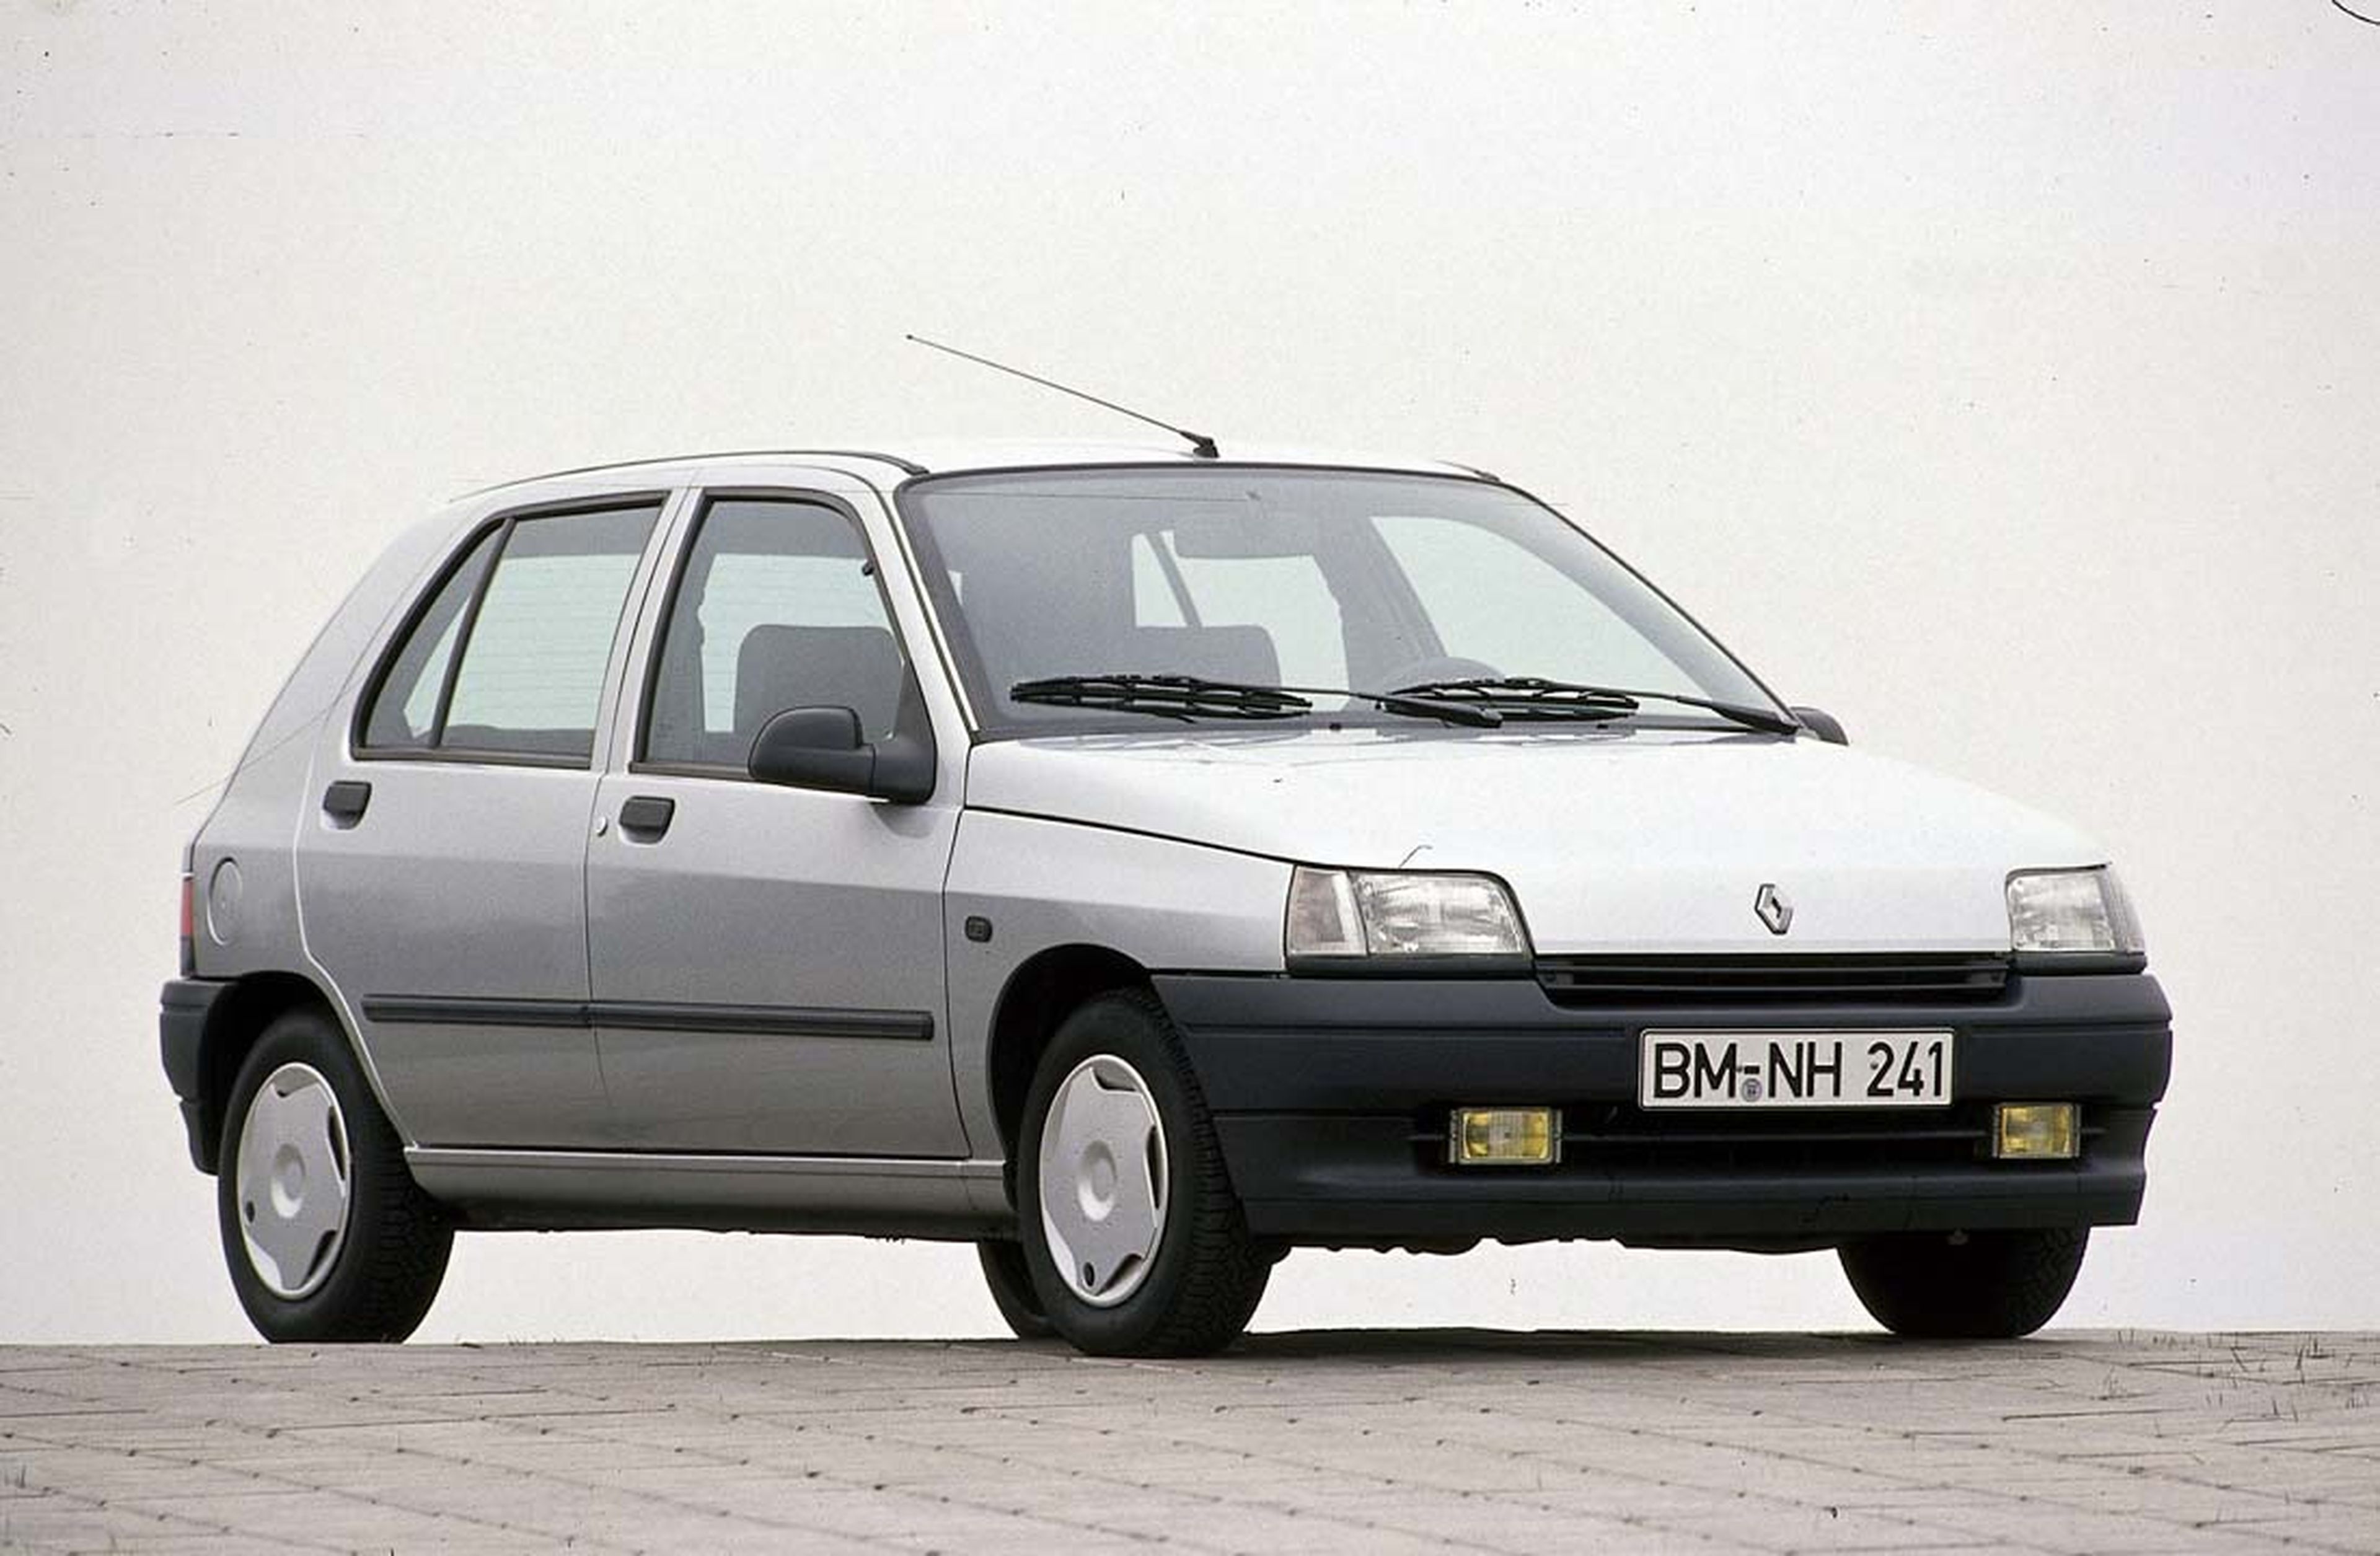 30 años de Renault Clio